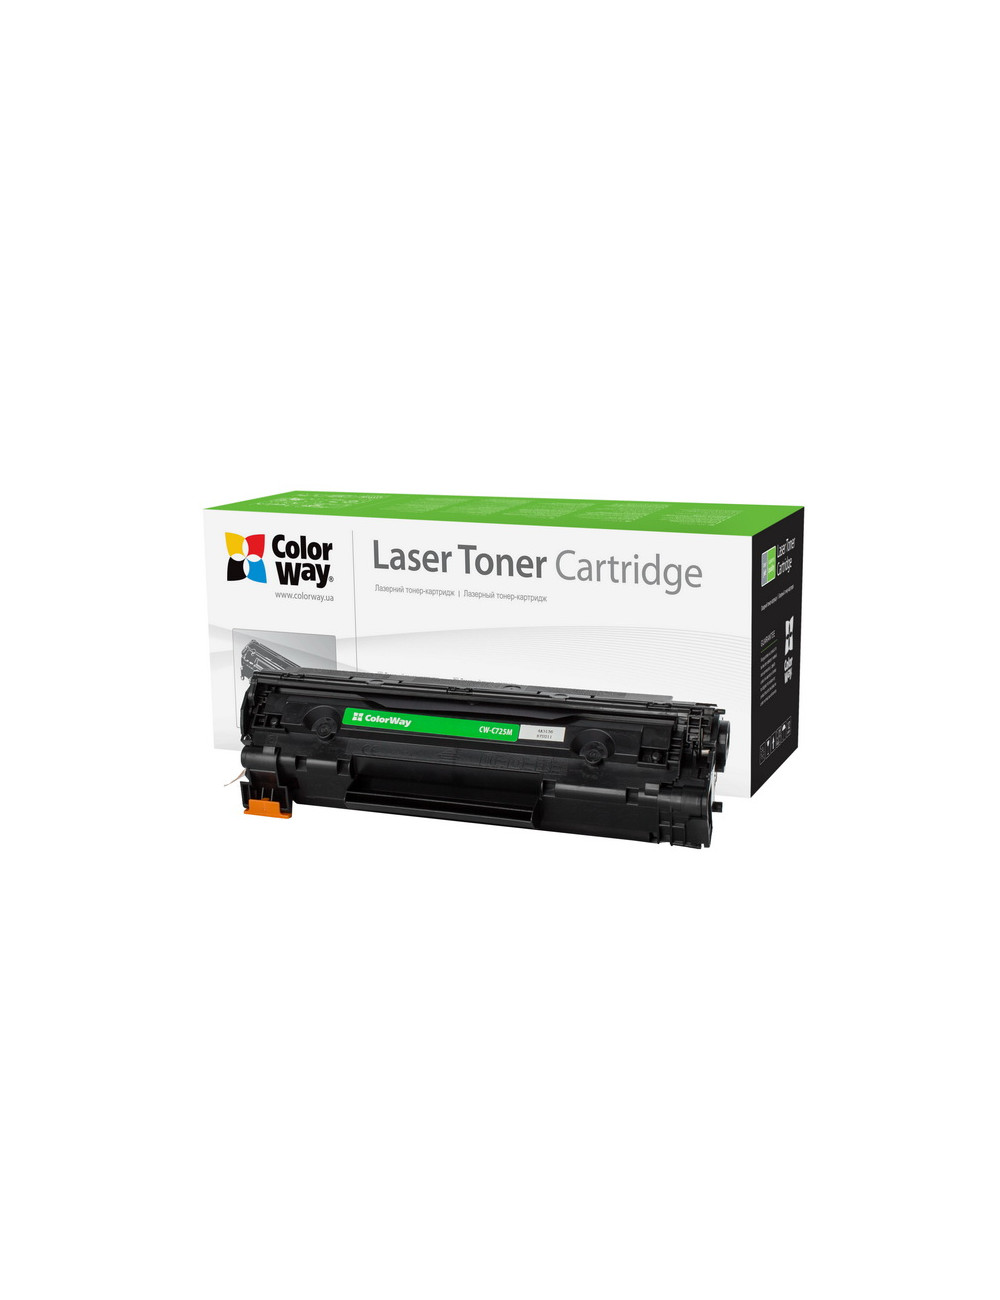 ColorWay Econom toner cartridge for Canon:725, HP CE285A ColorWay Econom Toner Cartridge, Black